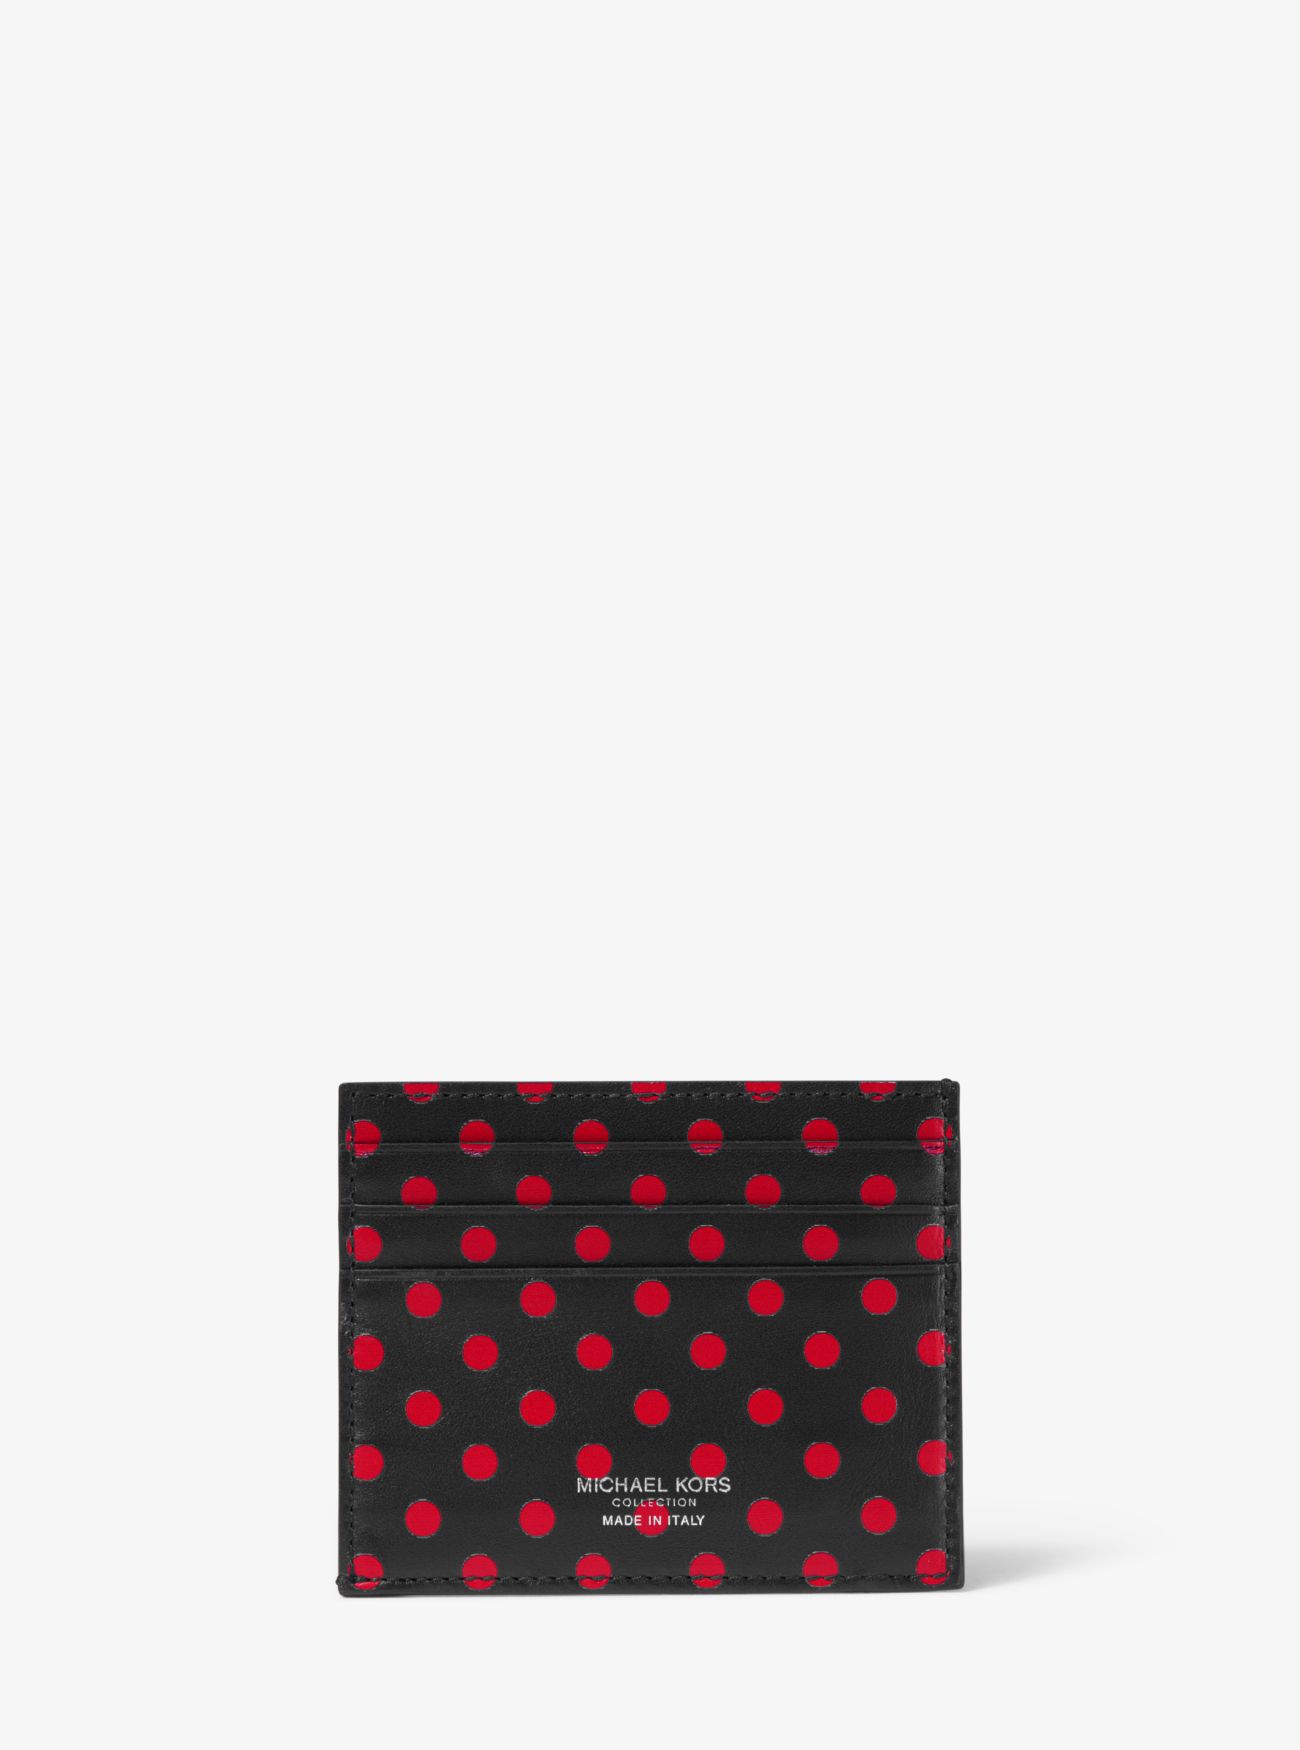 Небольшой кожаный чехол для карточек Michael Kors